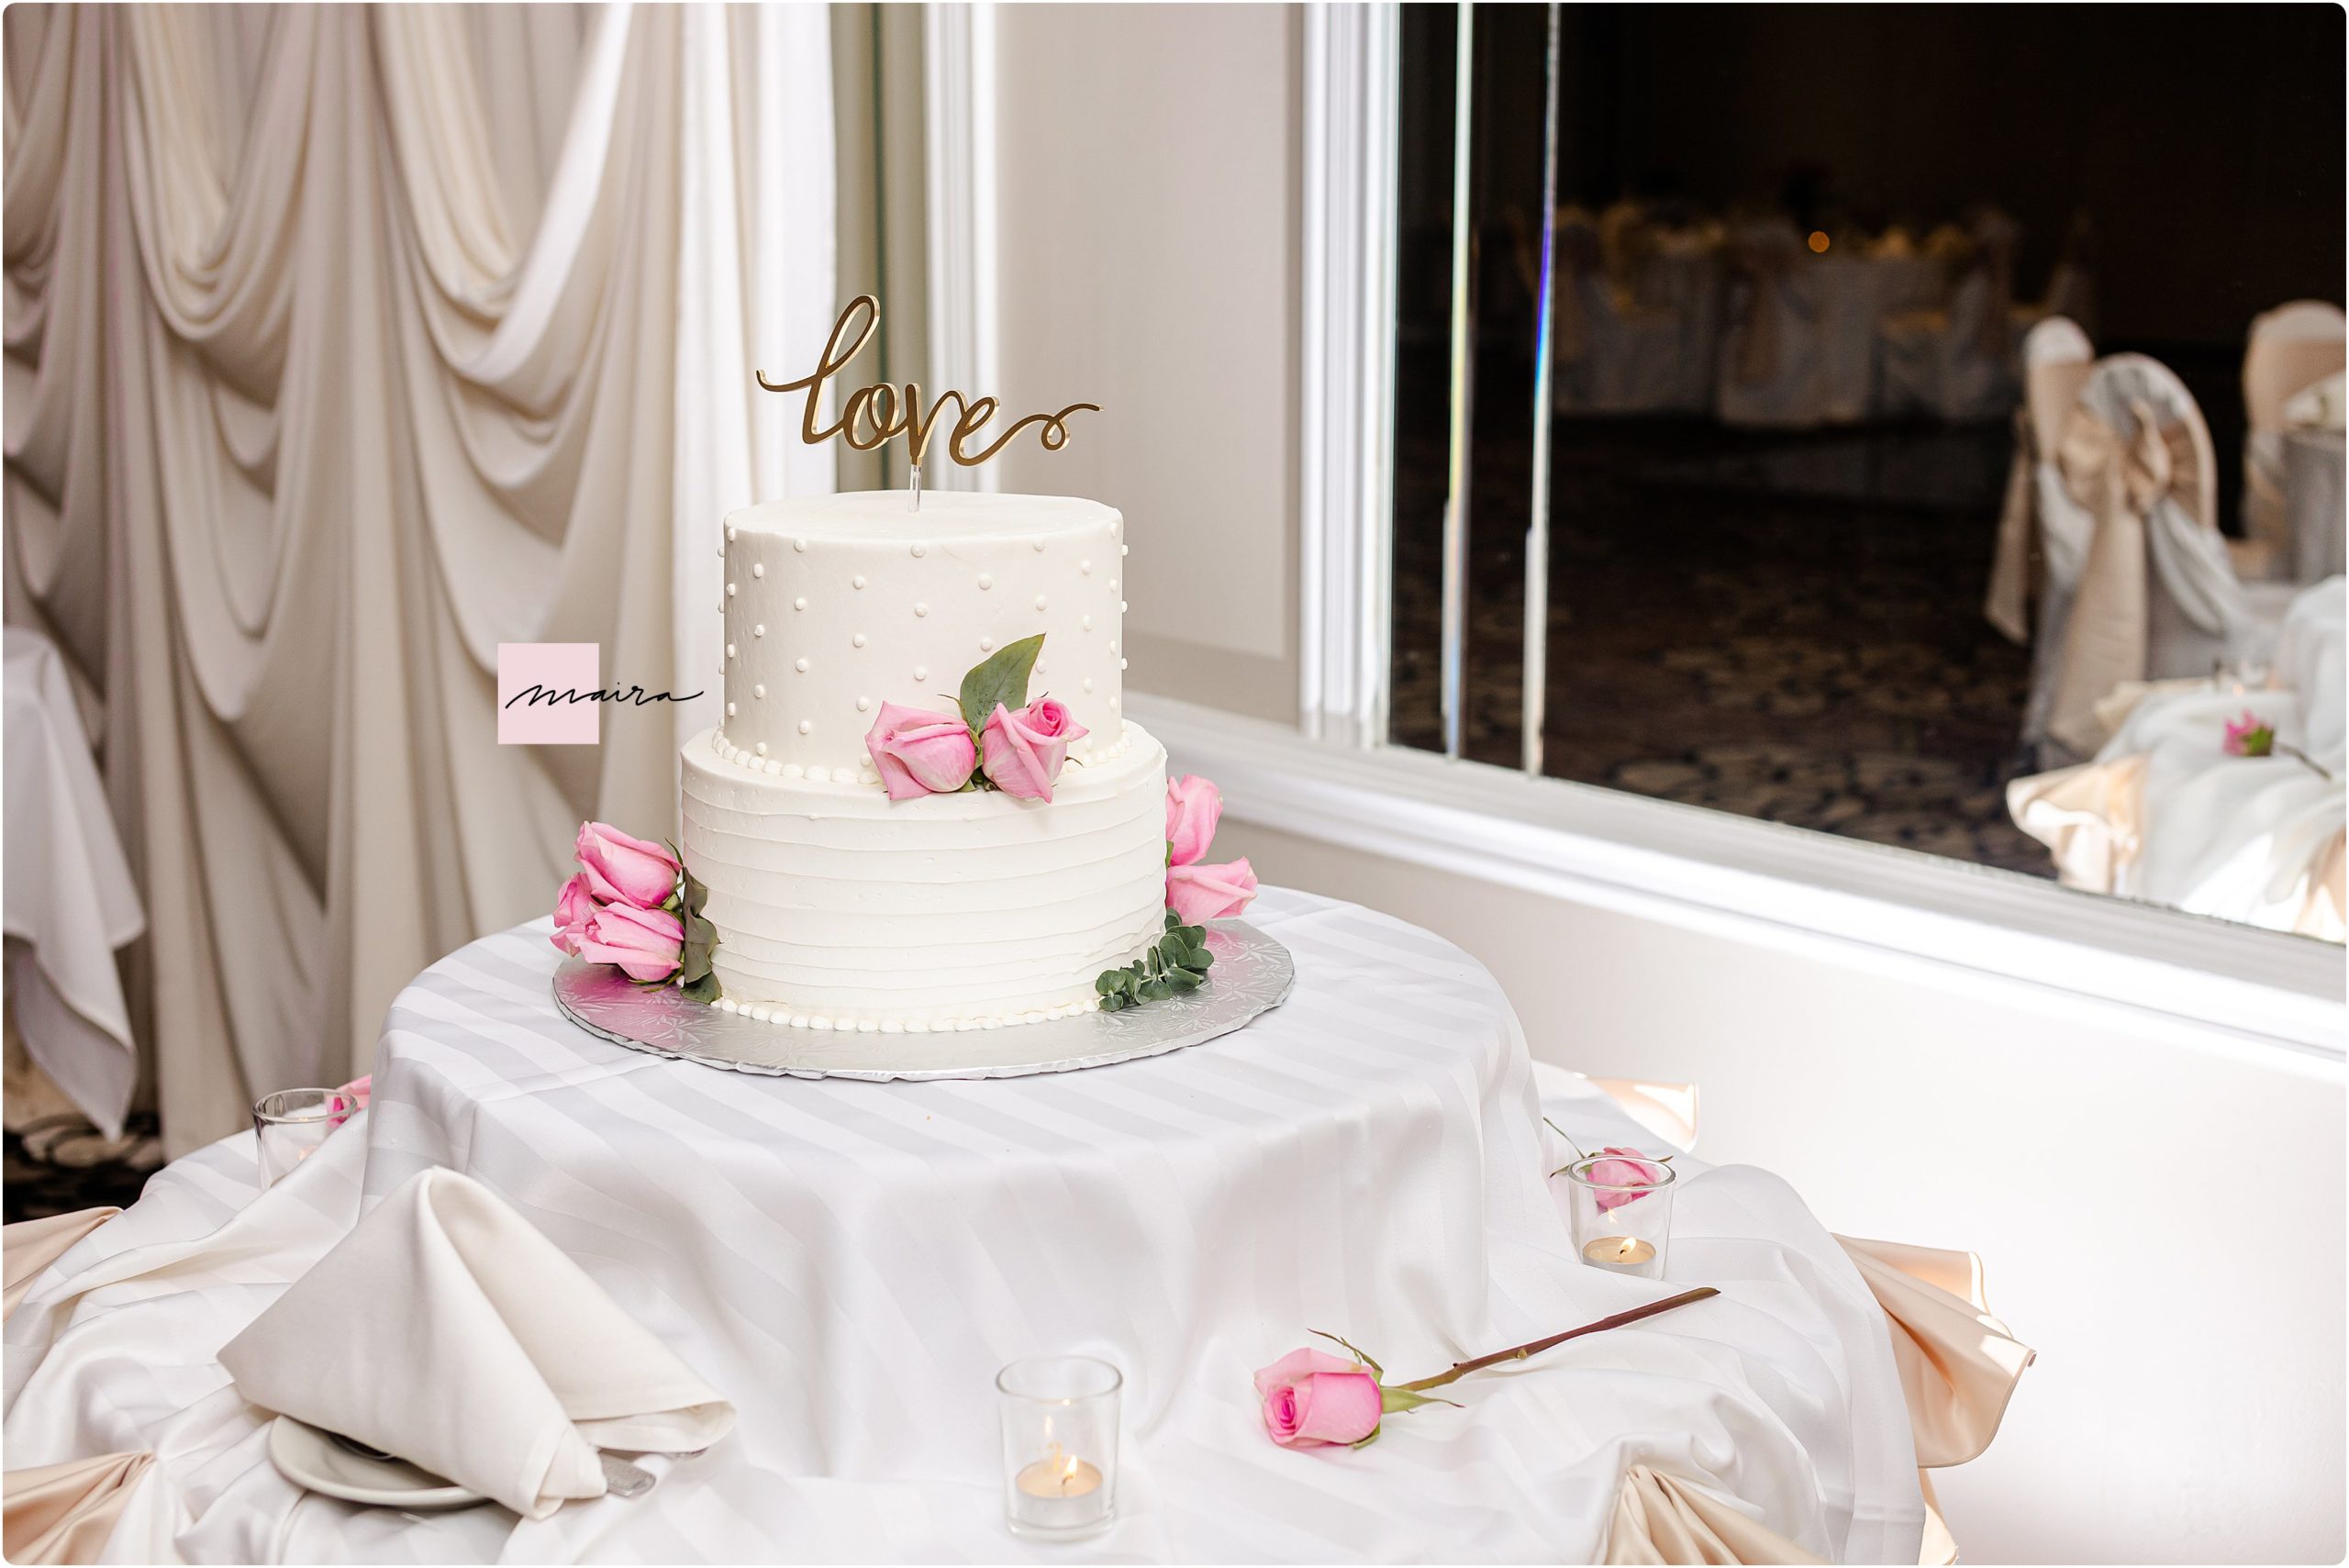 Wedding Cake, Wedding, Wedding Details, Flower Bouquet, Brides Bouquet, Roses, Pink Roses, Wedding Cake, Cake, Wedding Key, Key to Happiness